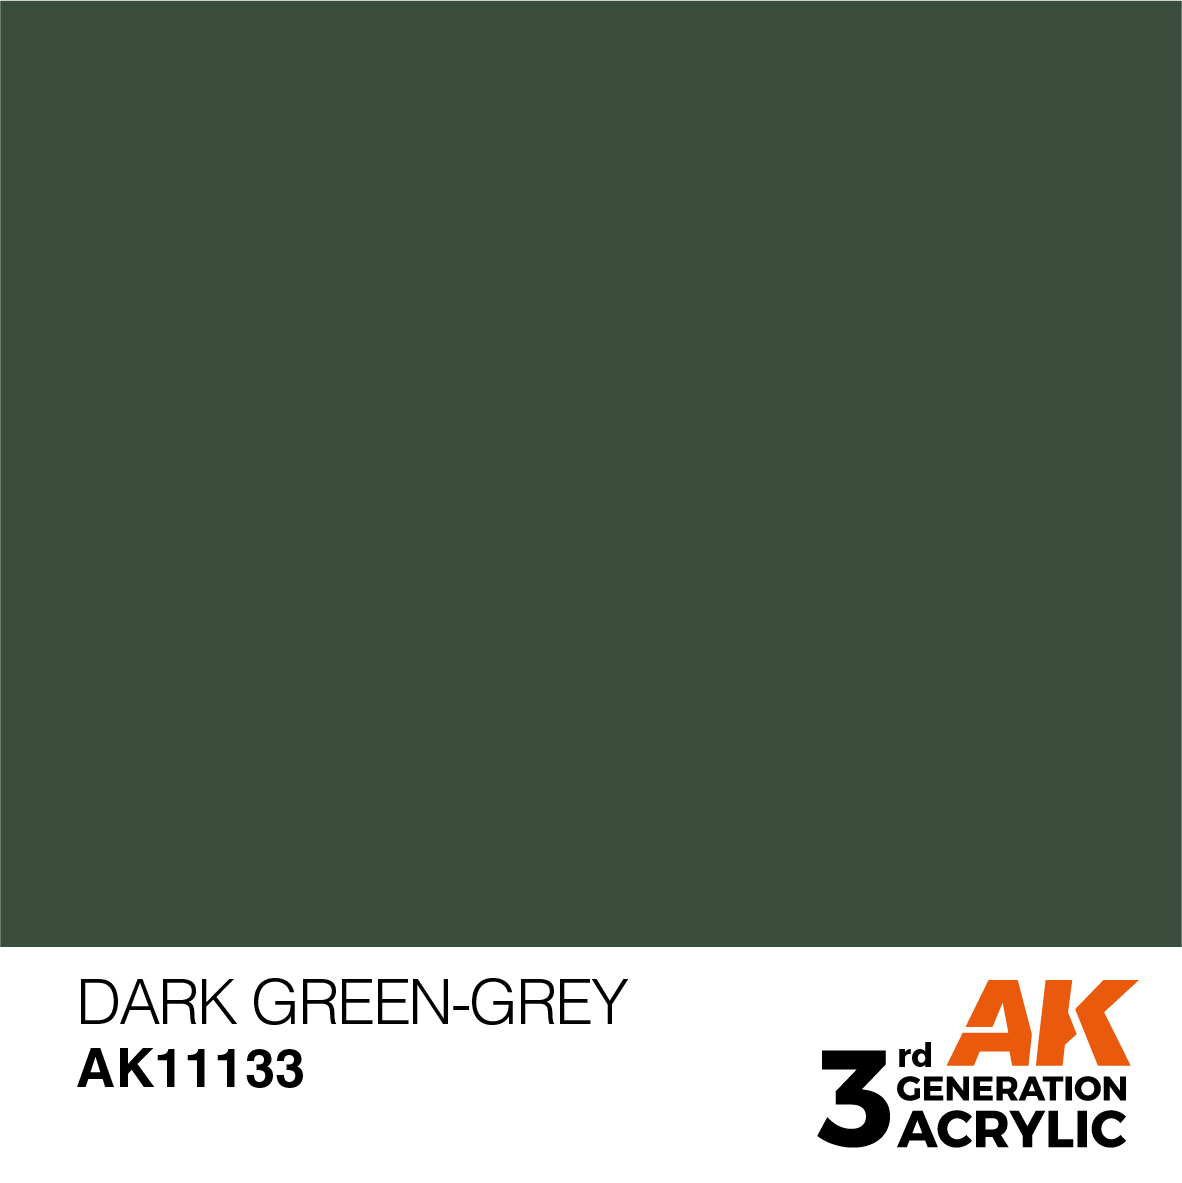 AK11133 Dark Green Grey (3rd-Generation) (17mL)